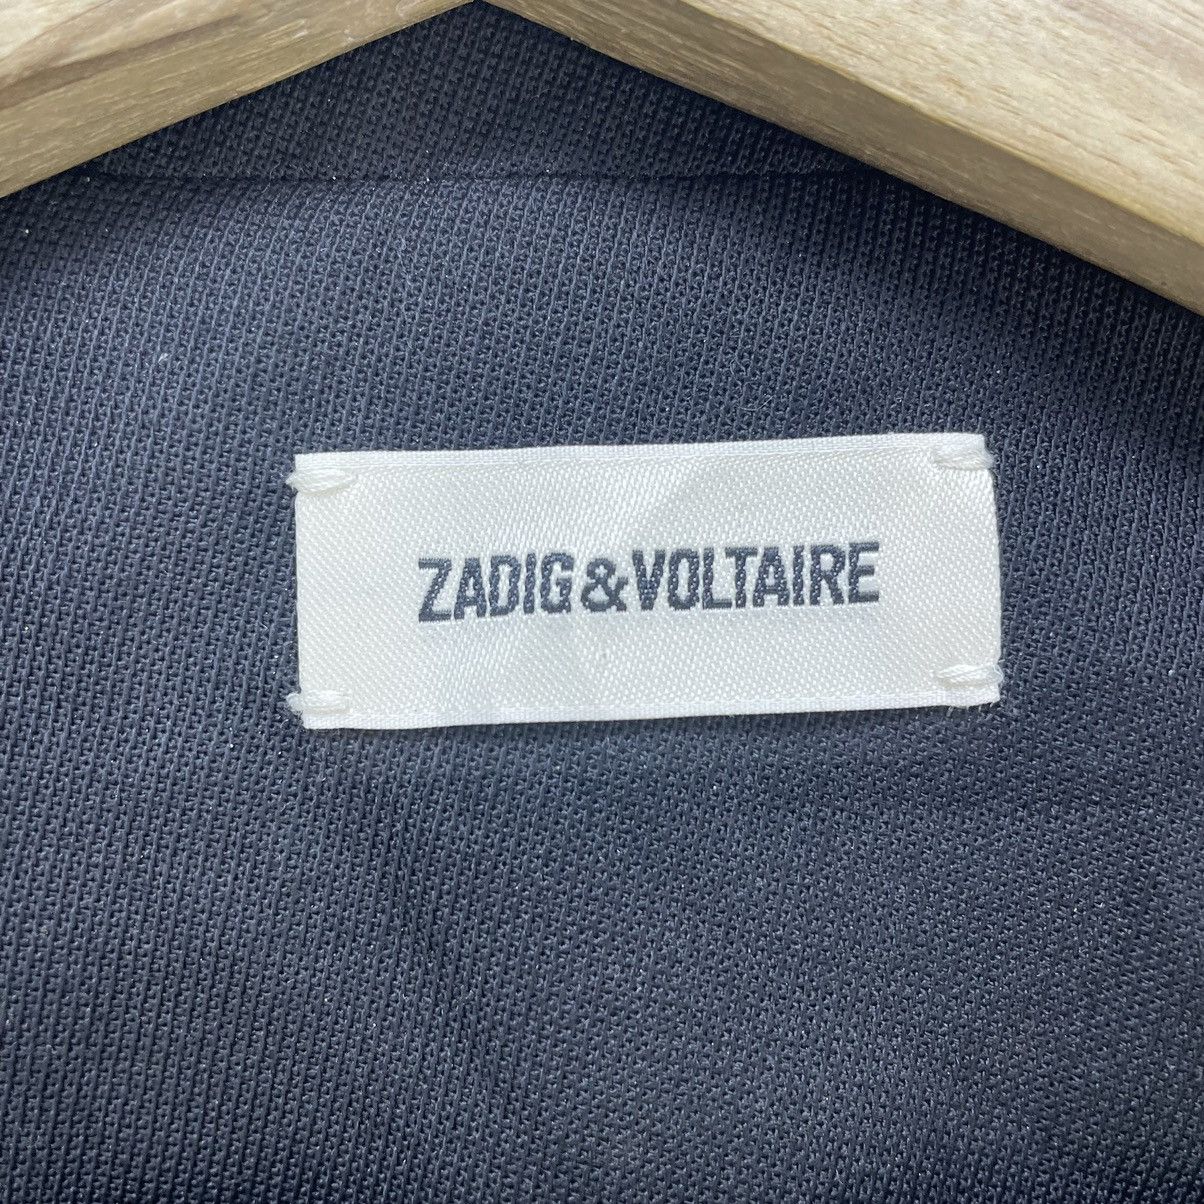 Zadig And Voltaire Jacket - 3